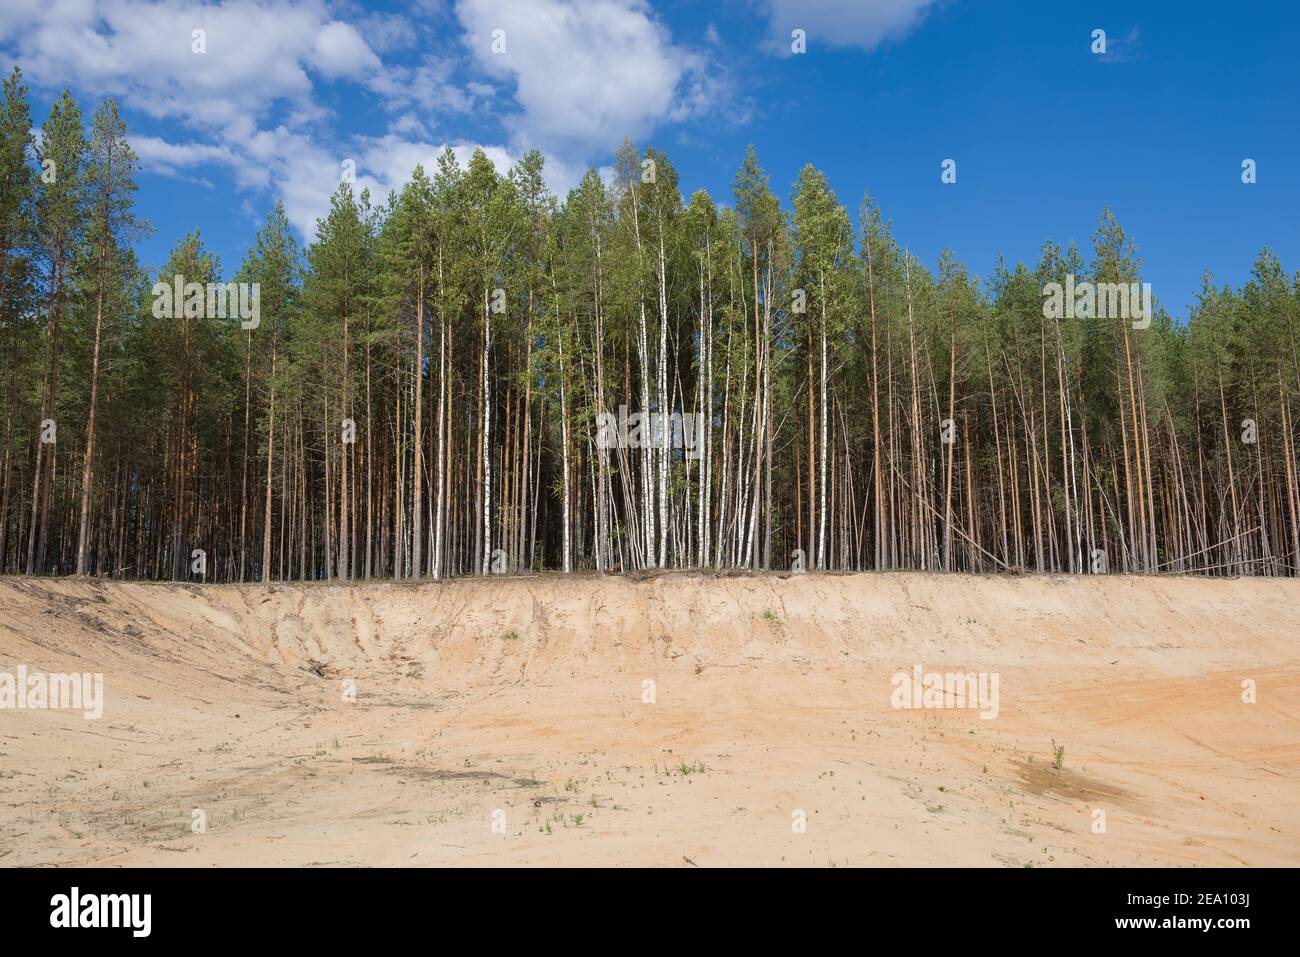 La forêt au bord de la carrière de sable est un jour ensoleillé d'été. Russie Banque D'Images